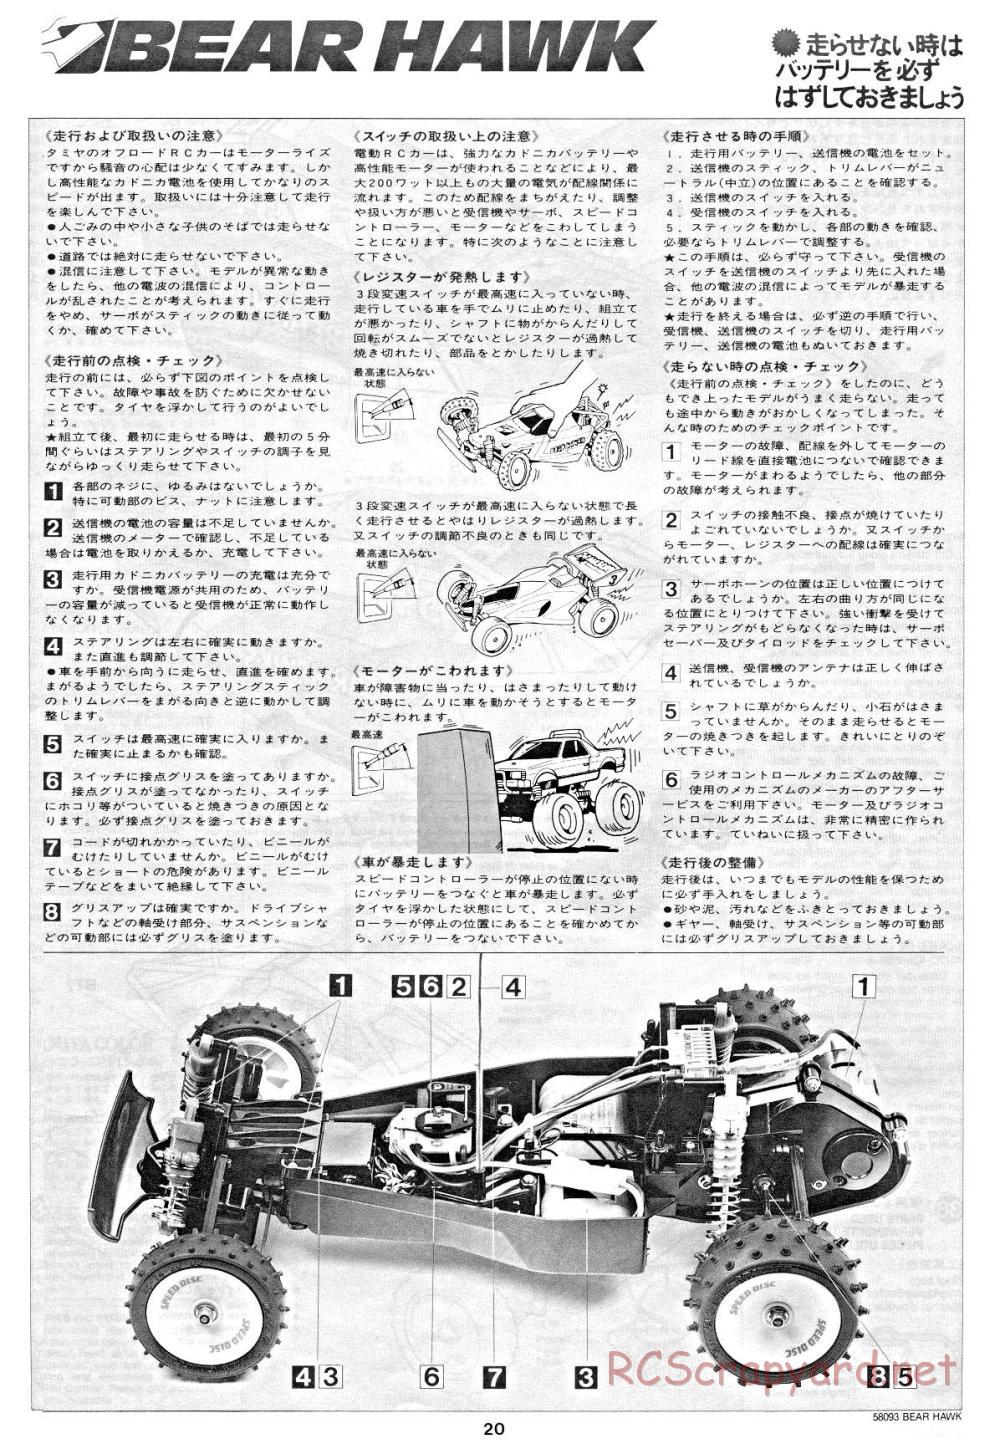 Tamiya - Bear Hawk - 58093 - Manual - Page 20